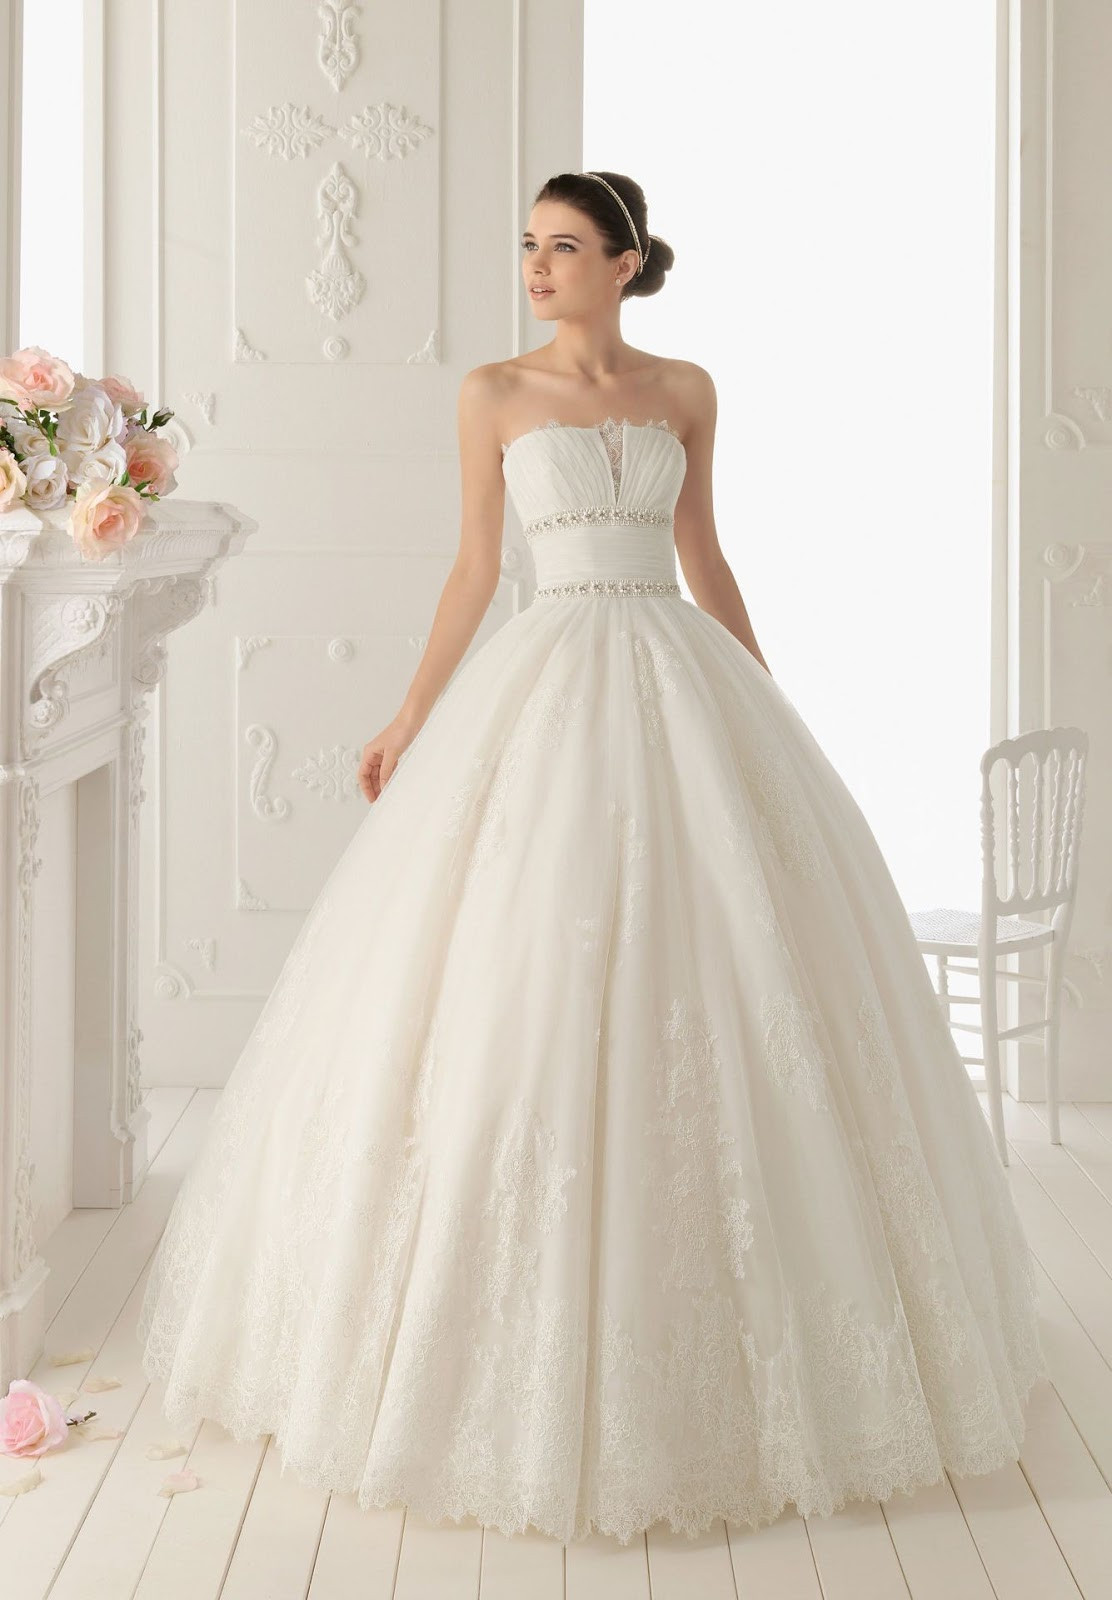 Elegant Lace Wedding Dresses
 WhiteAzalea Ball Gowns Lace Ball Gown Wedding Dress